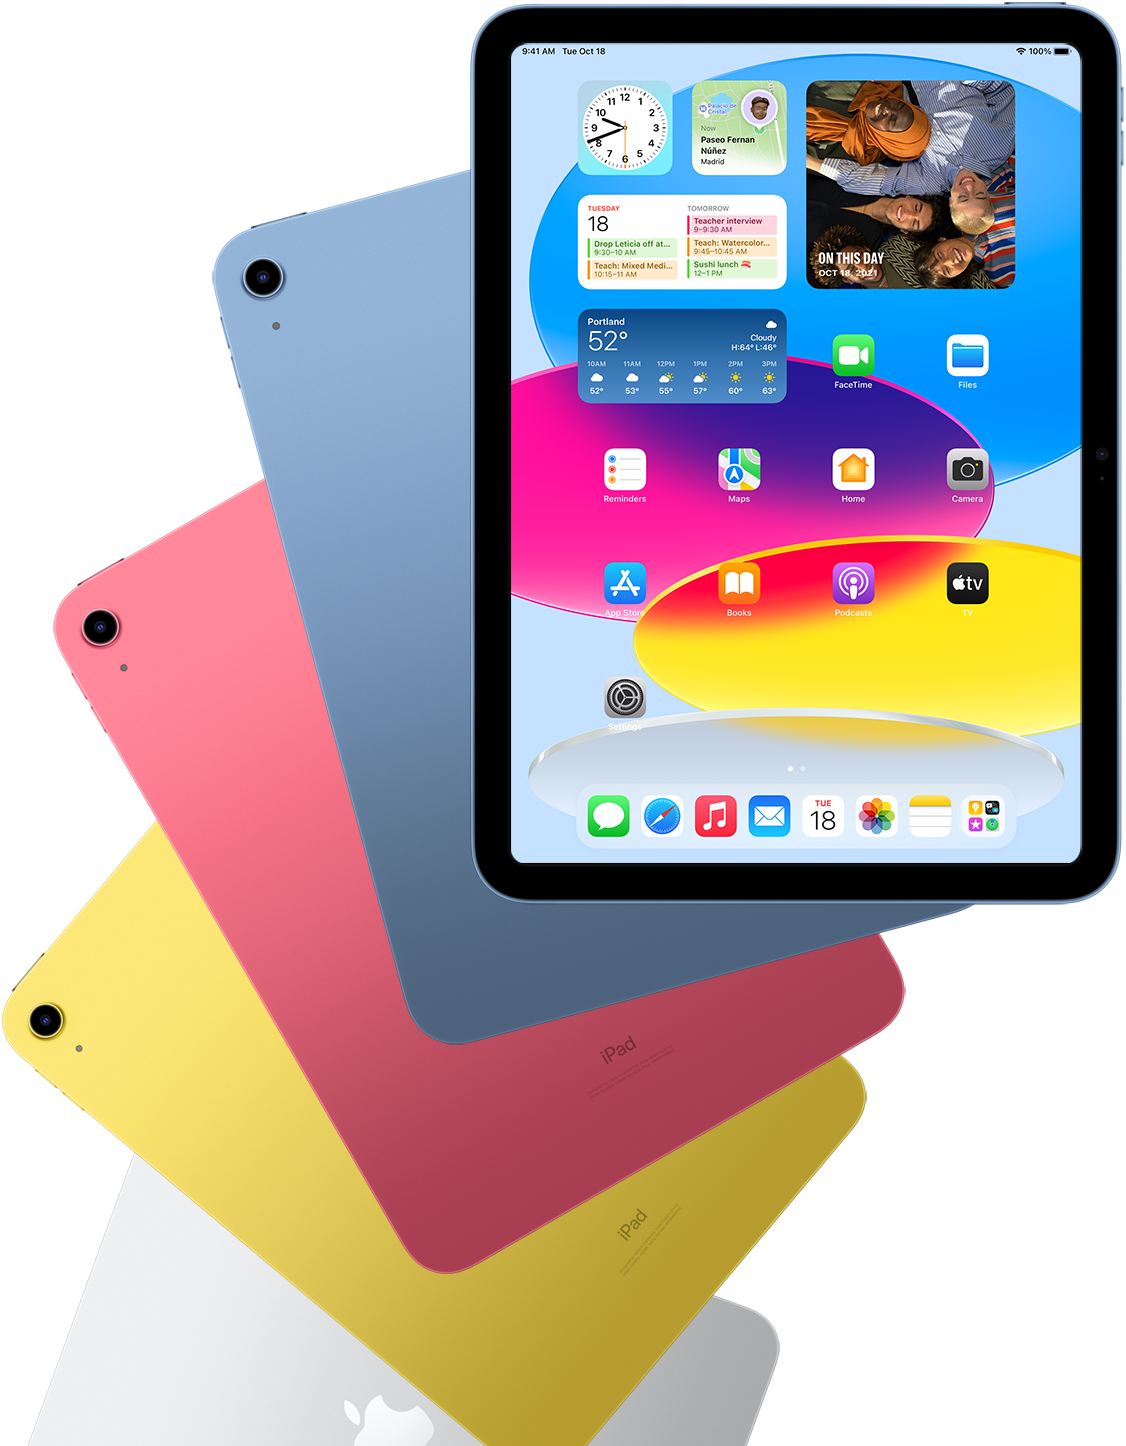 Vooraanzicht van een iPad met beginscherm, met daarachter een aantal iPads met een blauwe, roze, gele en zilverkleurige achterkant.